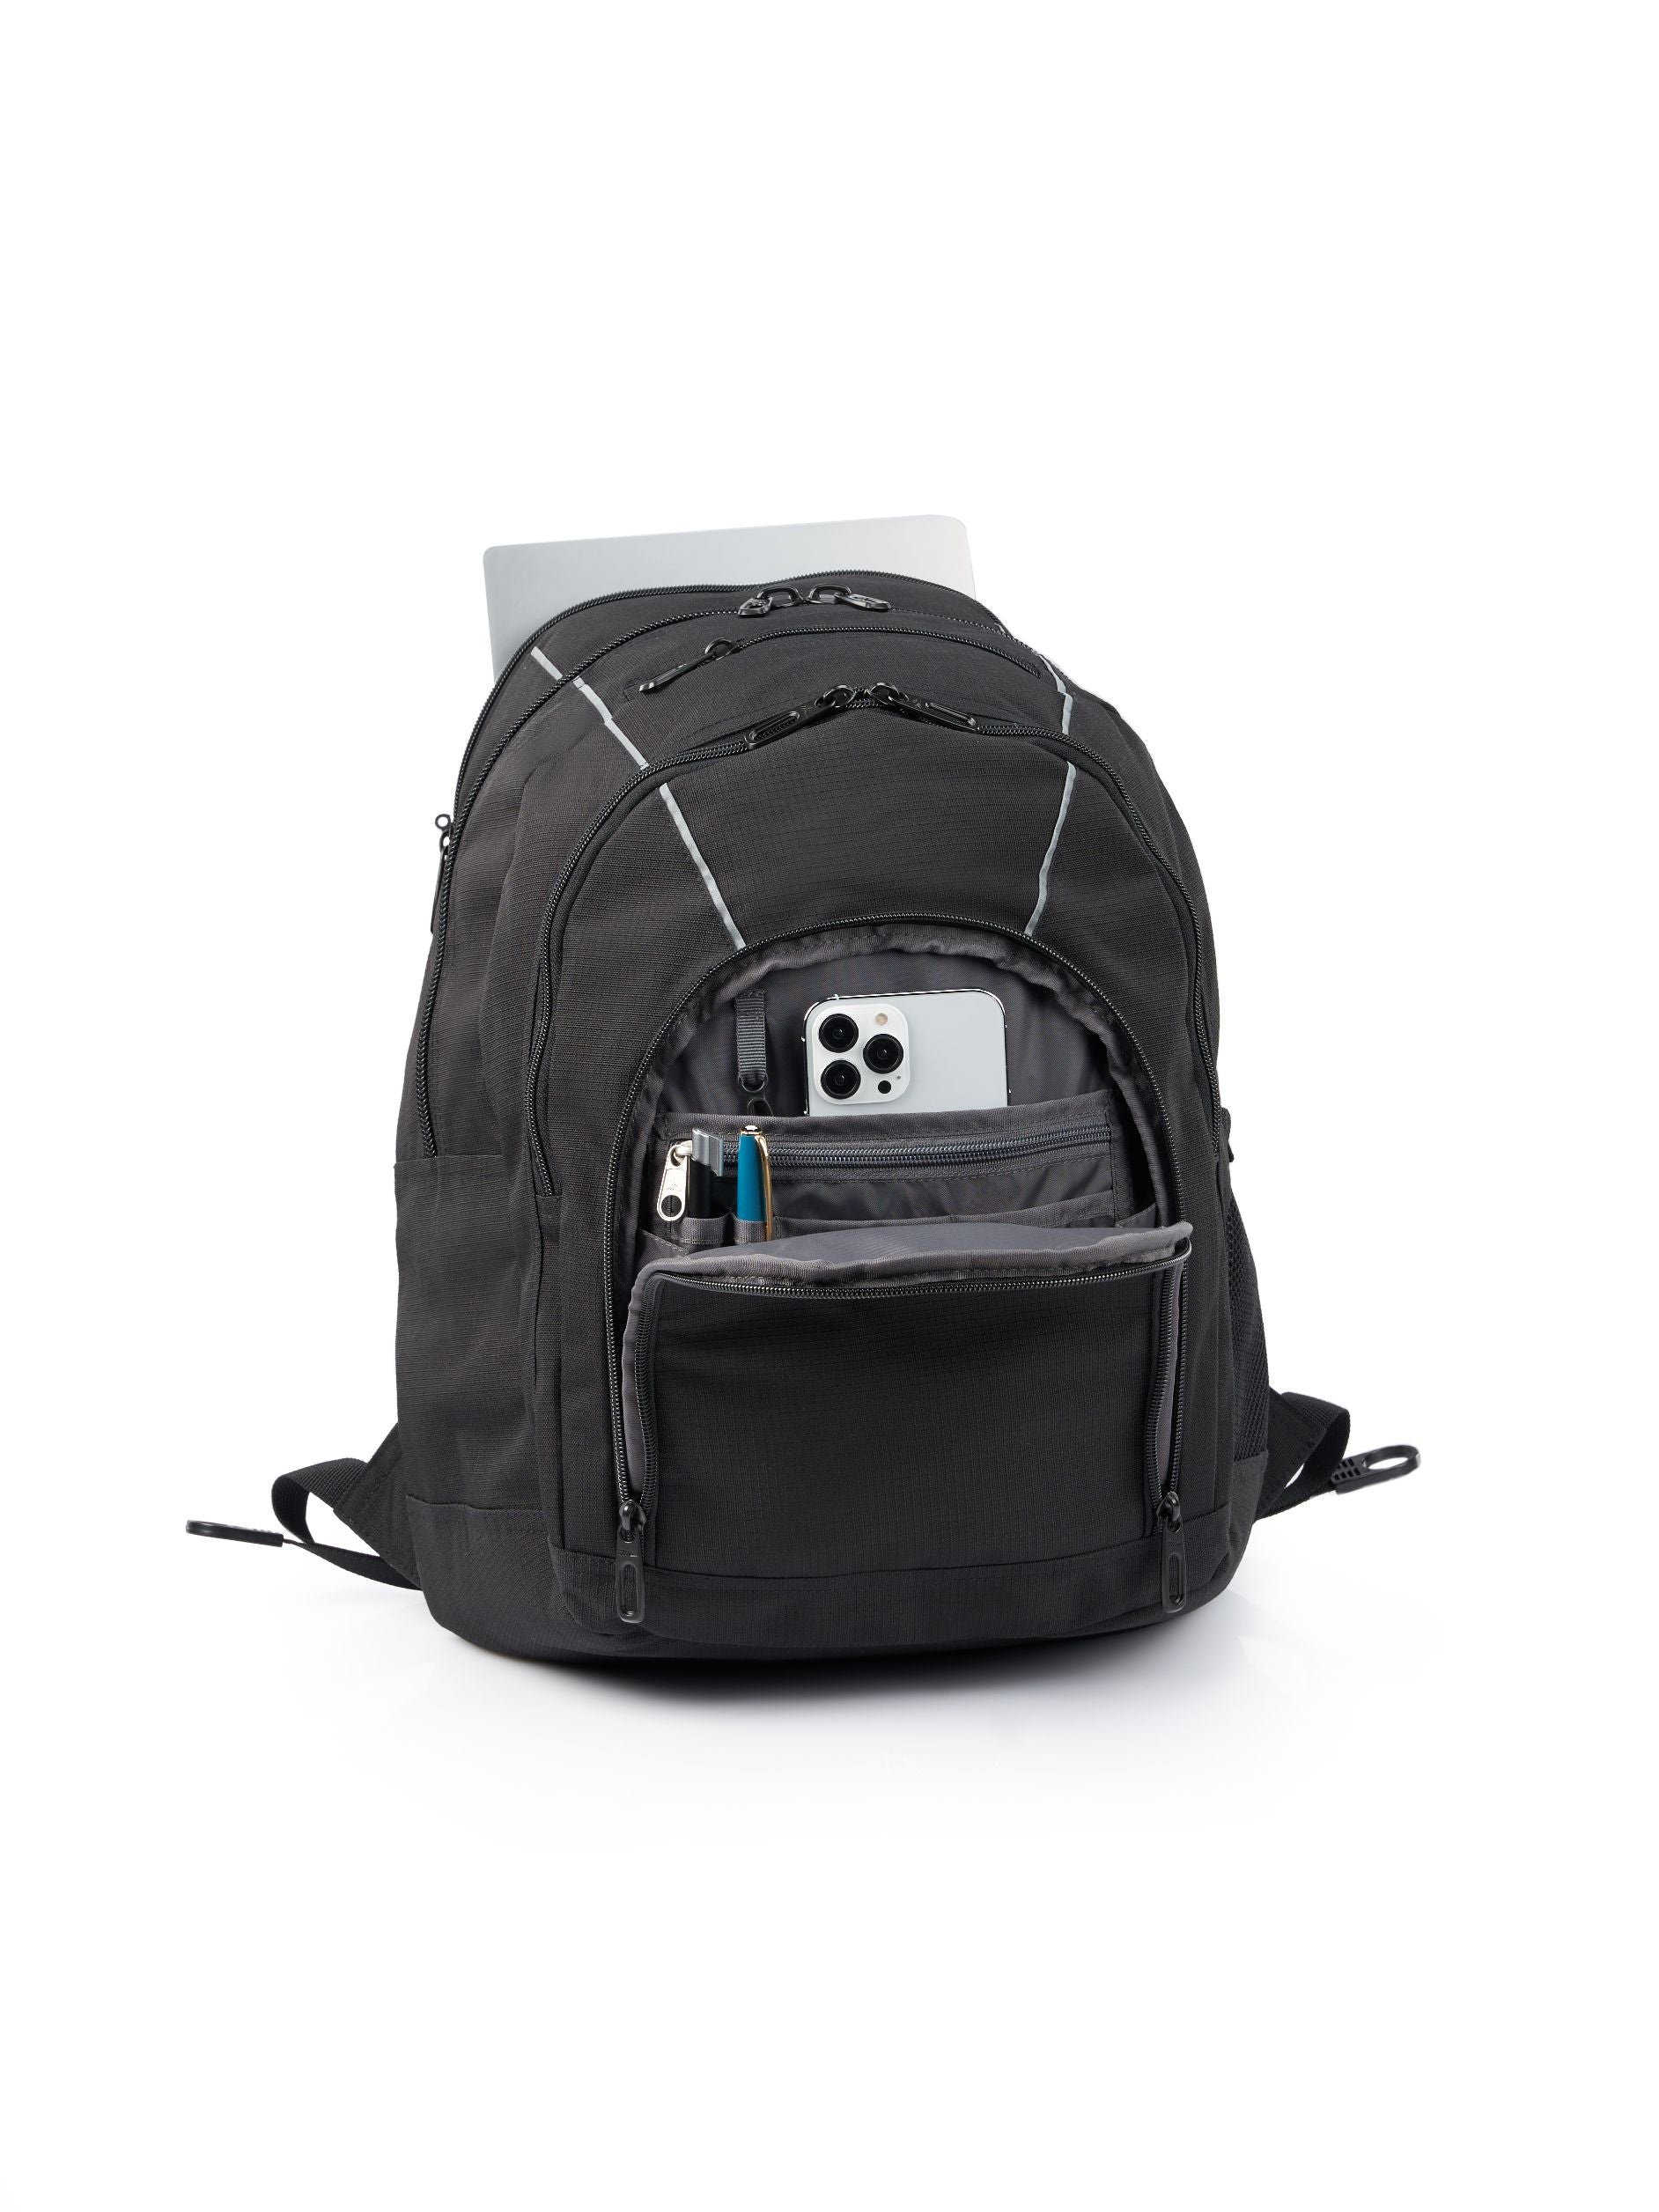 High Sierra - Academy 3.0 Backpack Eco - Black-6